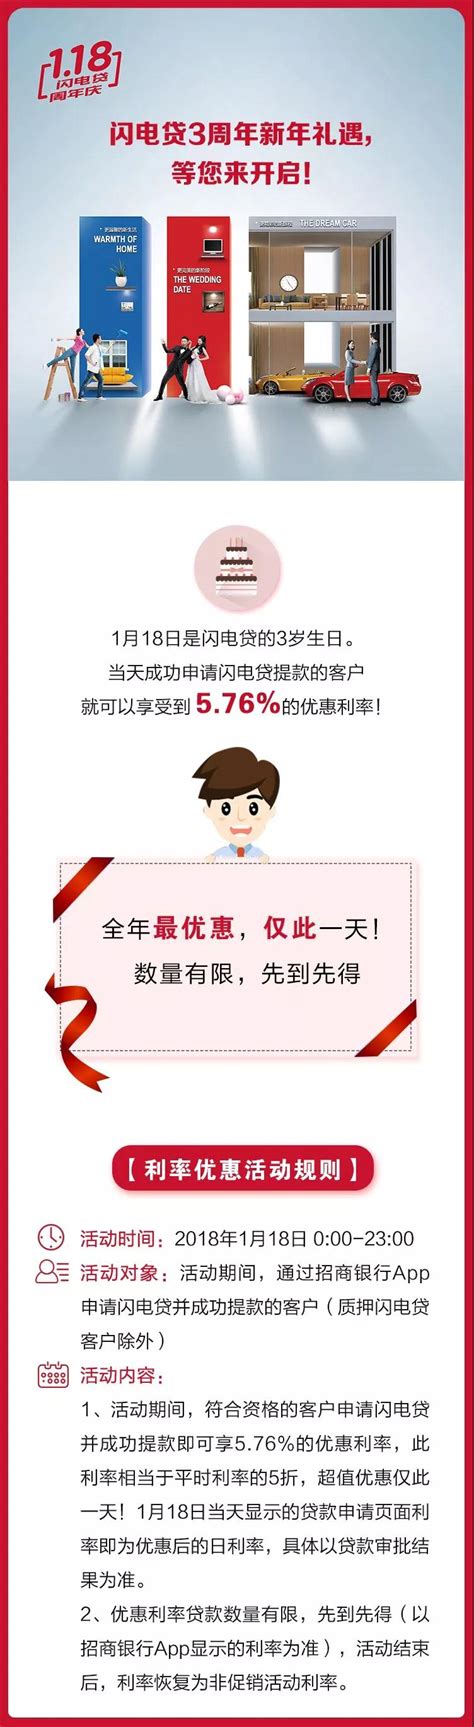 招商银行“闪电贷”3周年特惠上线 利率低至5.76%_江西频道_凤凰网